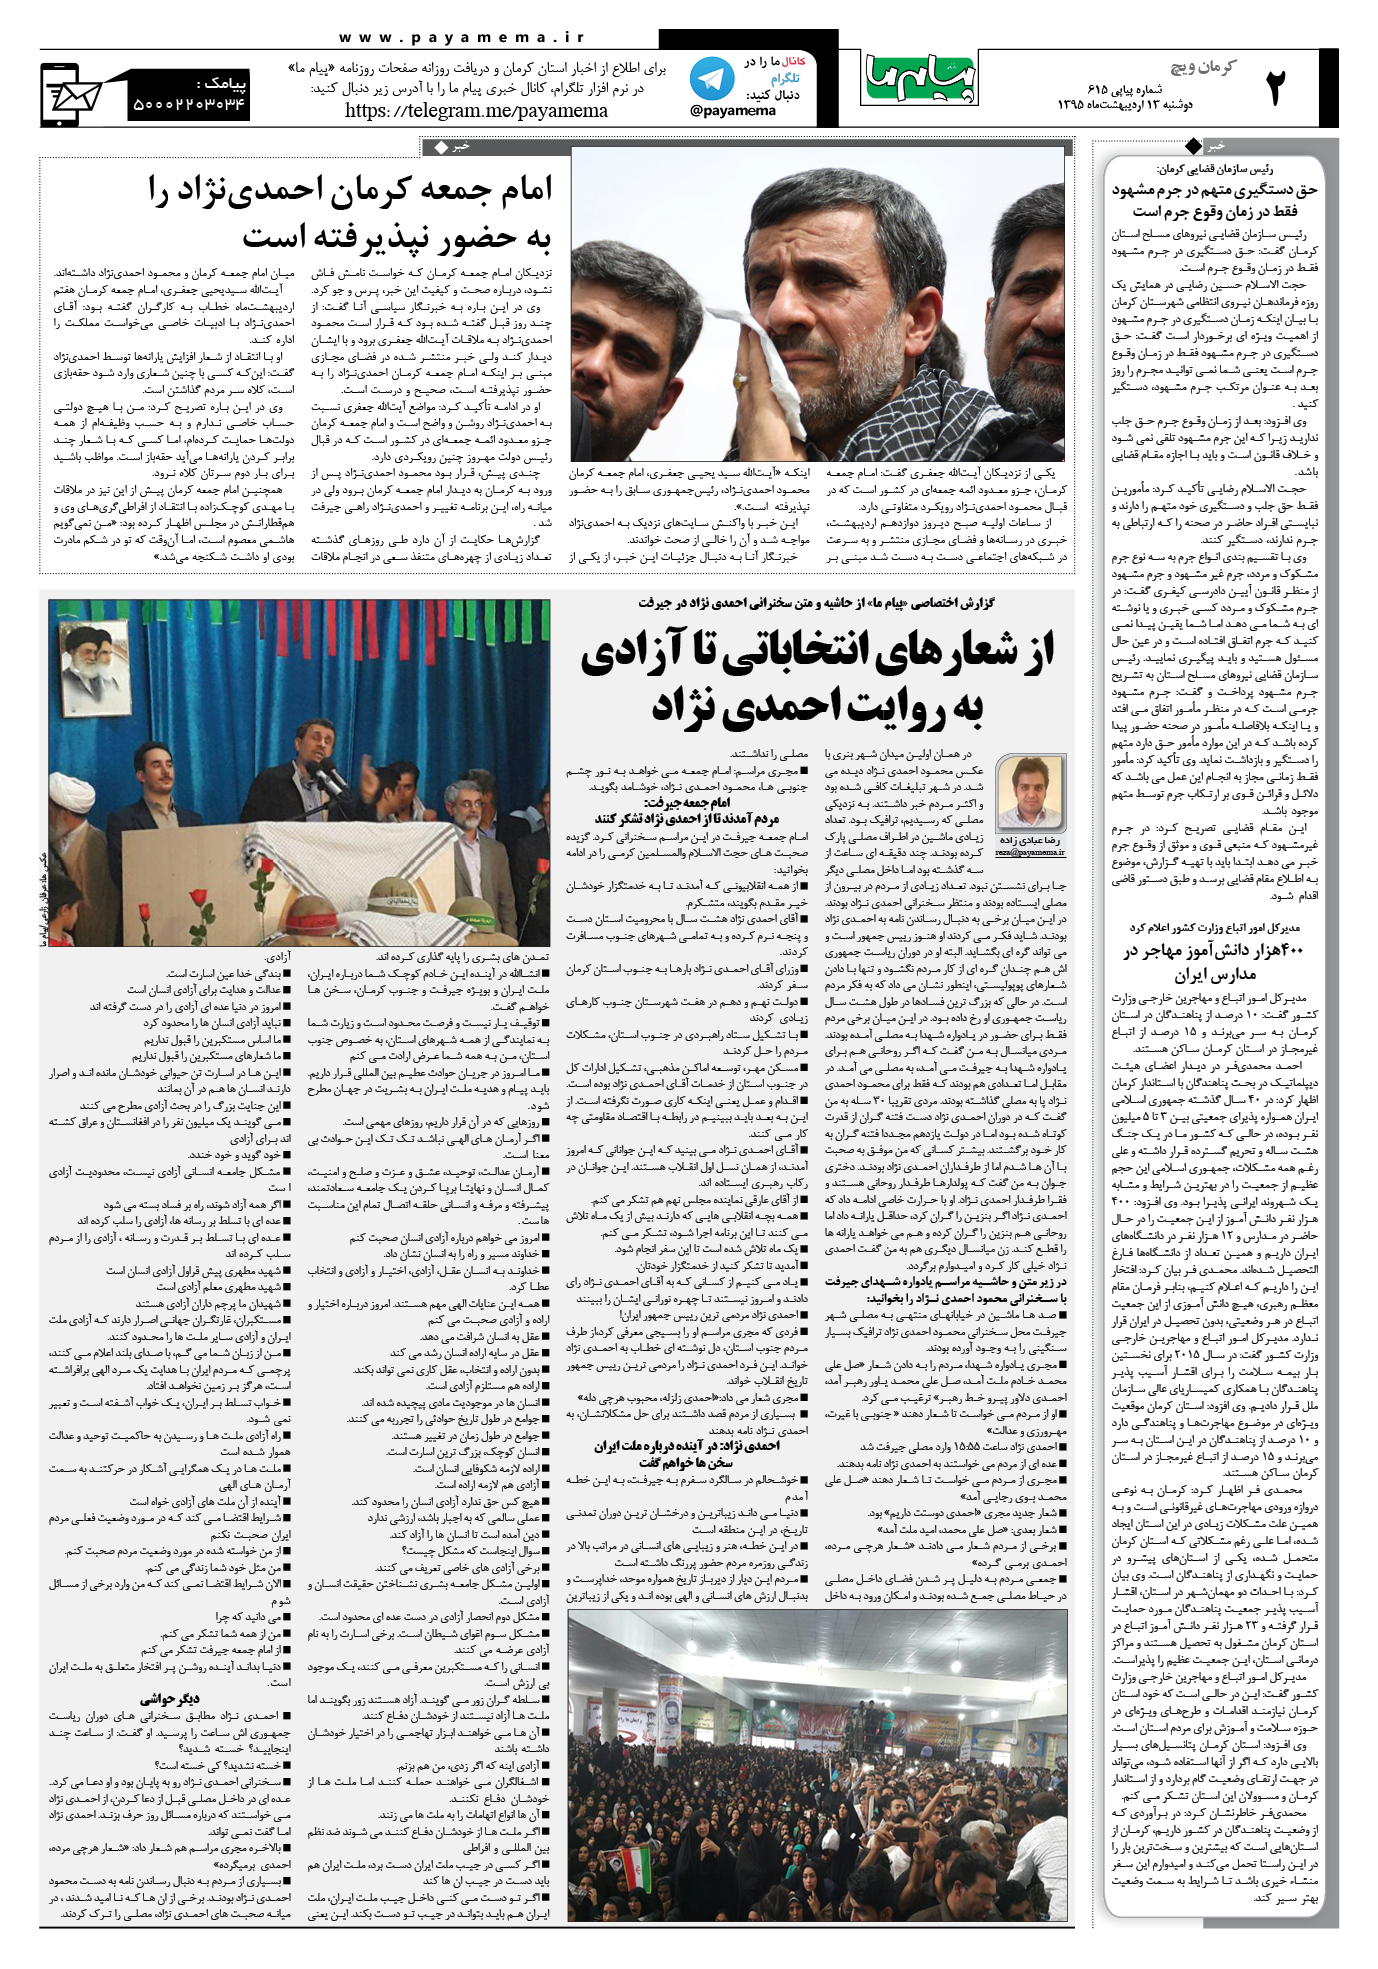 صفحه کرمان ویج شماره 615 روزنامه پیام ما